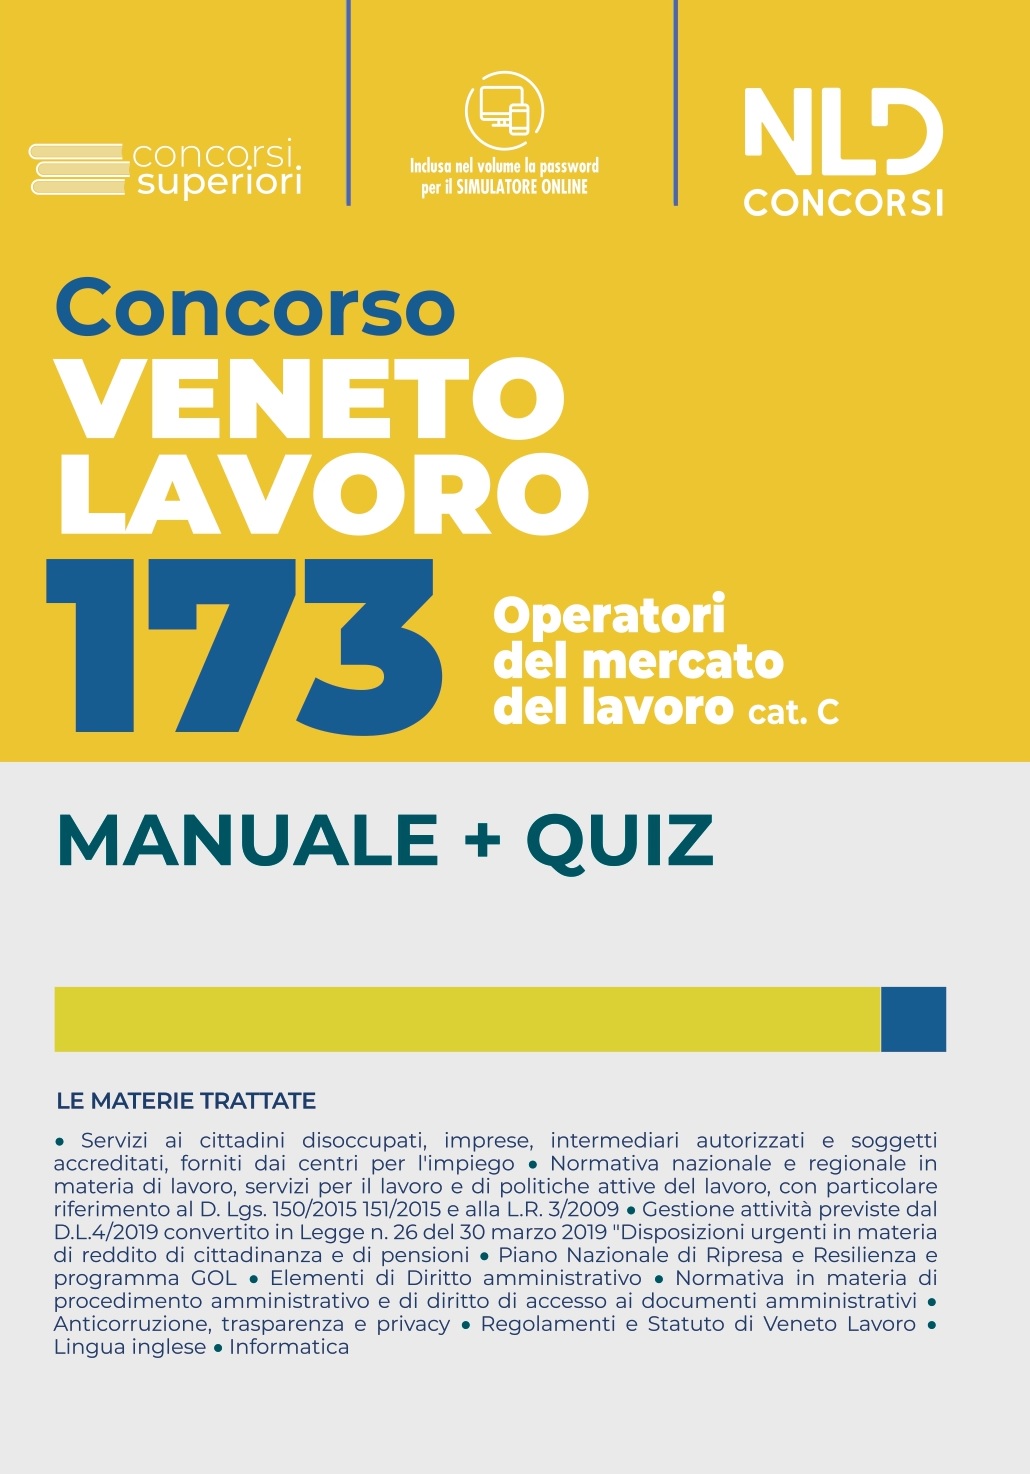 Concorso Veneto Lavoro – 173 Operatori Del Mercato del Lavoro Cat. C – Manuale + Quiz Completo